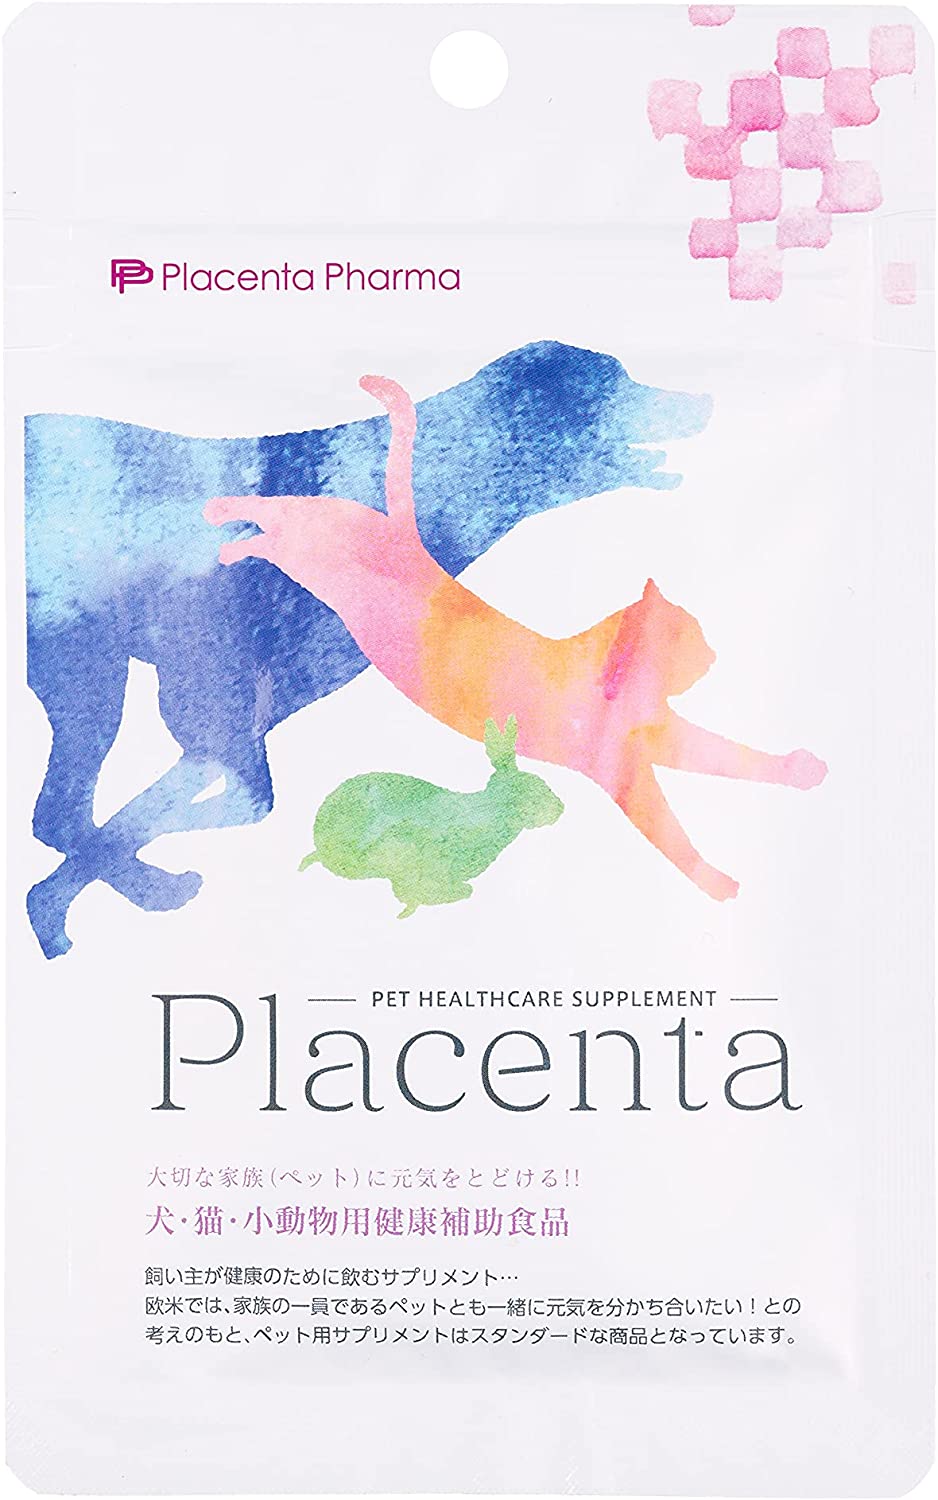 プラセンタ 犬・猫・小動物用健康補助食品 20粒 犬 猫 サプリメント 総合栄養補給 ペット 国産 Placenta